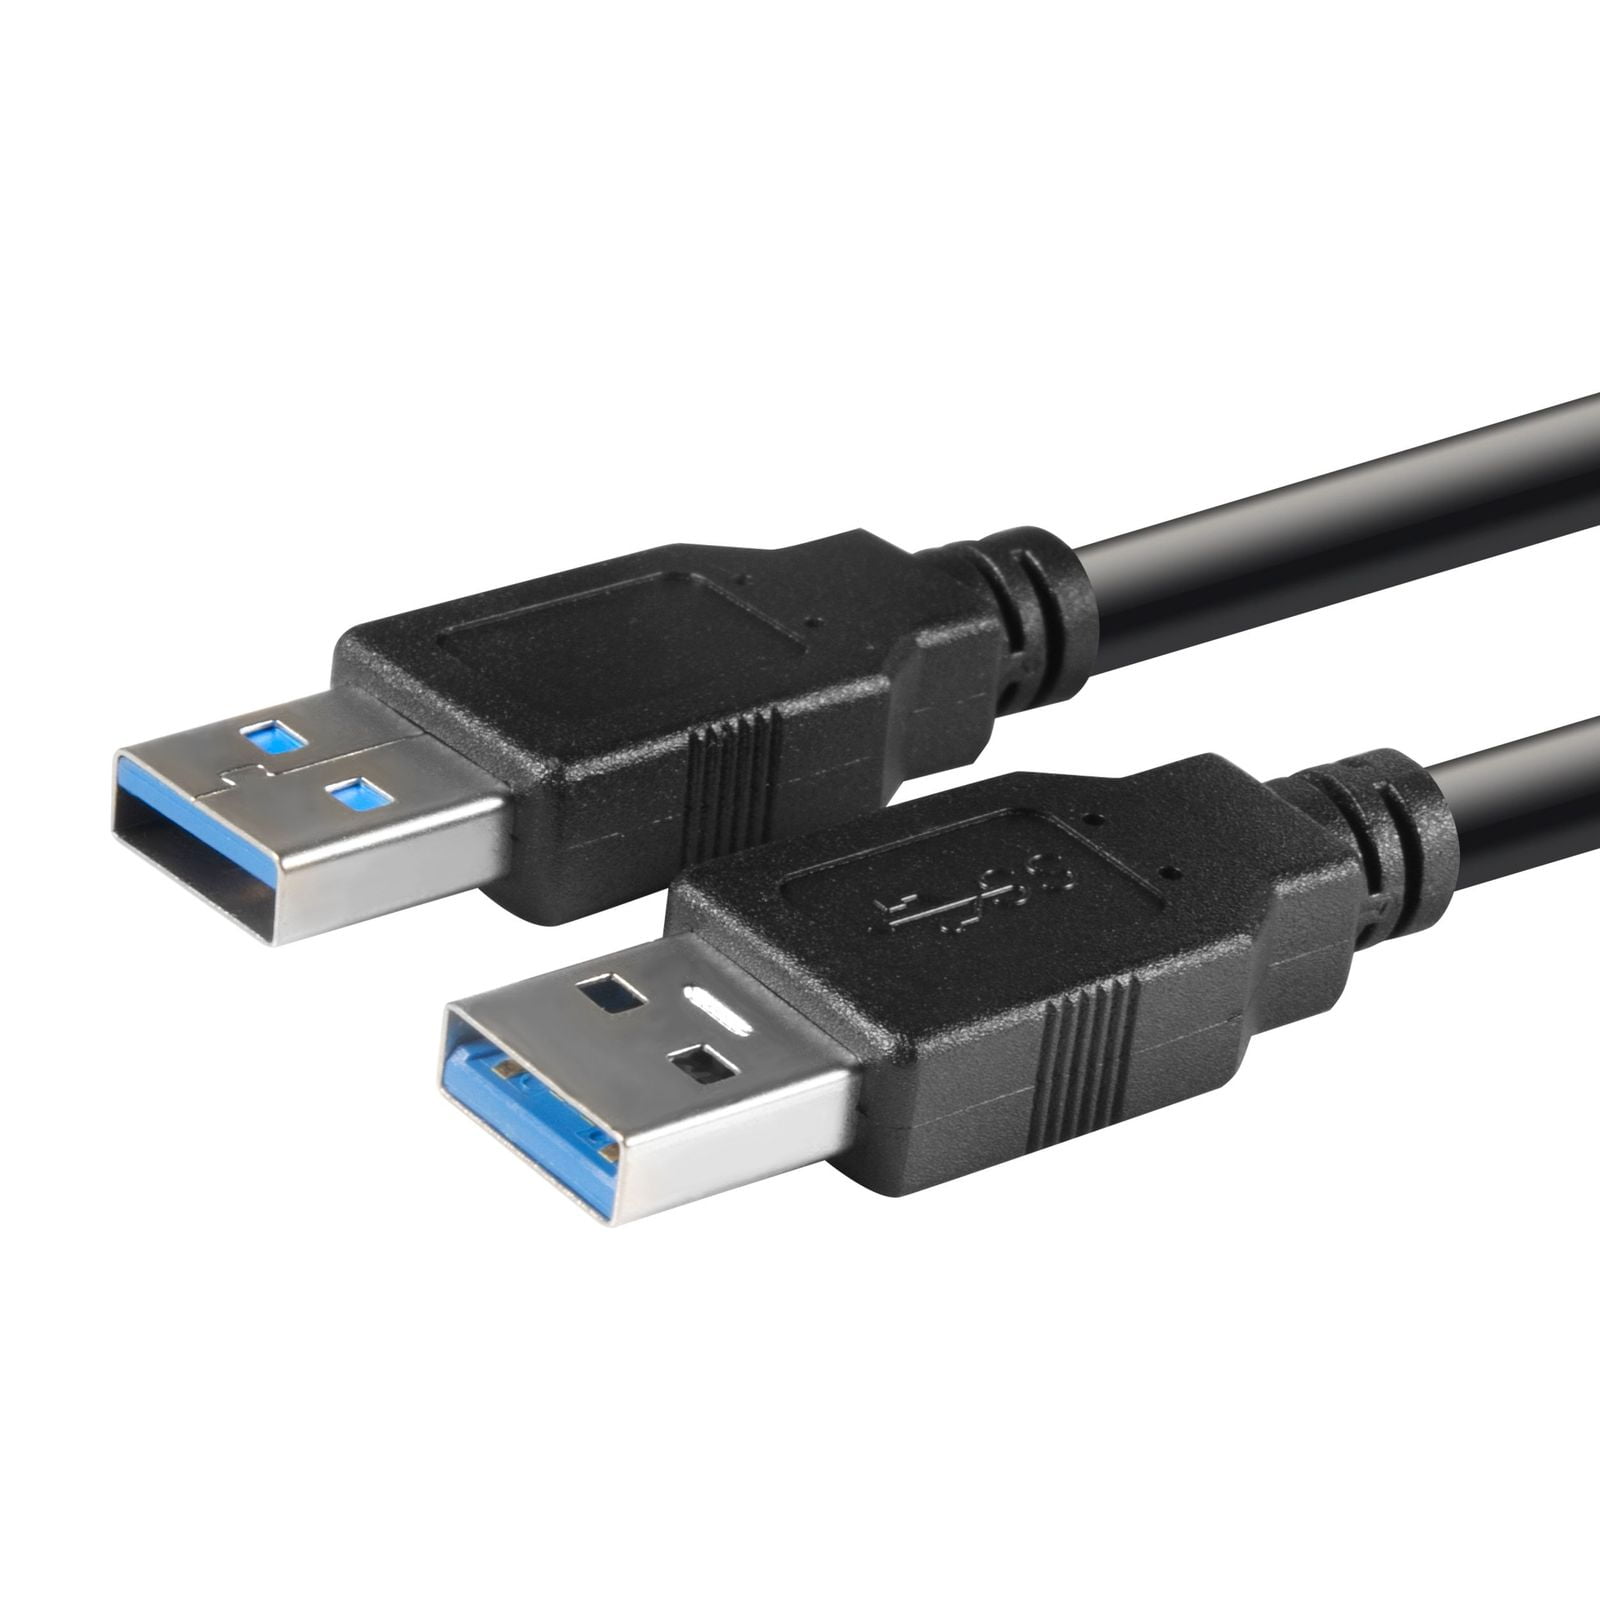 NX105 NX100 OEM Epson USB Printer Interface Cable for Stylus N11 NX110 NX115 NX125 